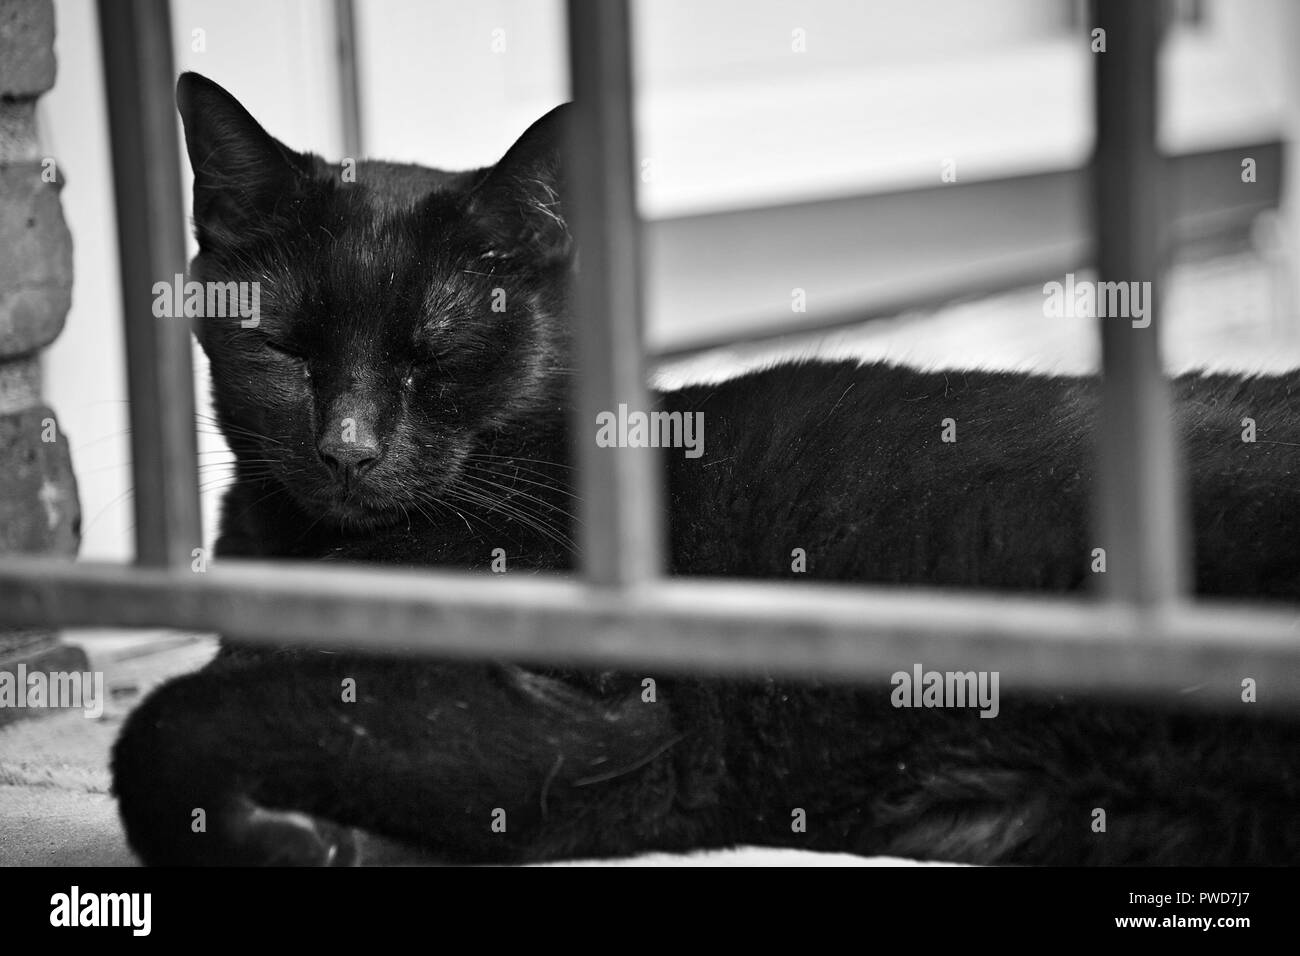 Un chat noir se bloque sur un quartier résidentiel stoop Banque D'Images